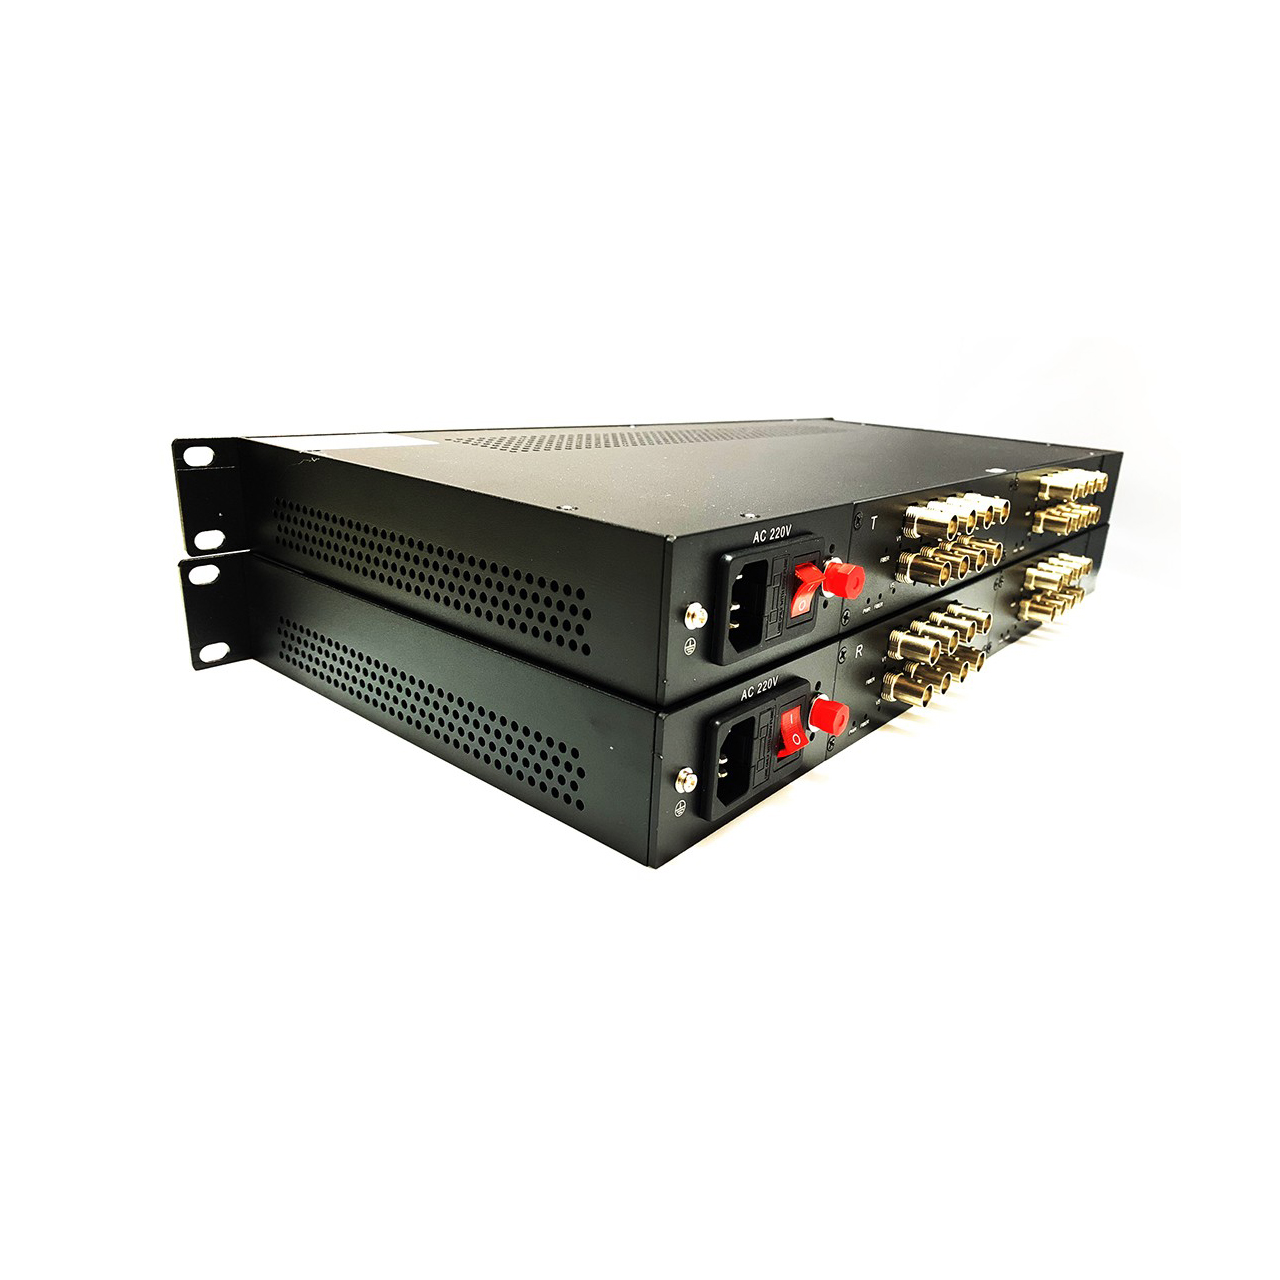 Bộ Chuyển đổi Quang Video 16 kênh GNETCOM HL-16V-20T/R-1080P (2  thiết bị) - Hàng Chính hãng